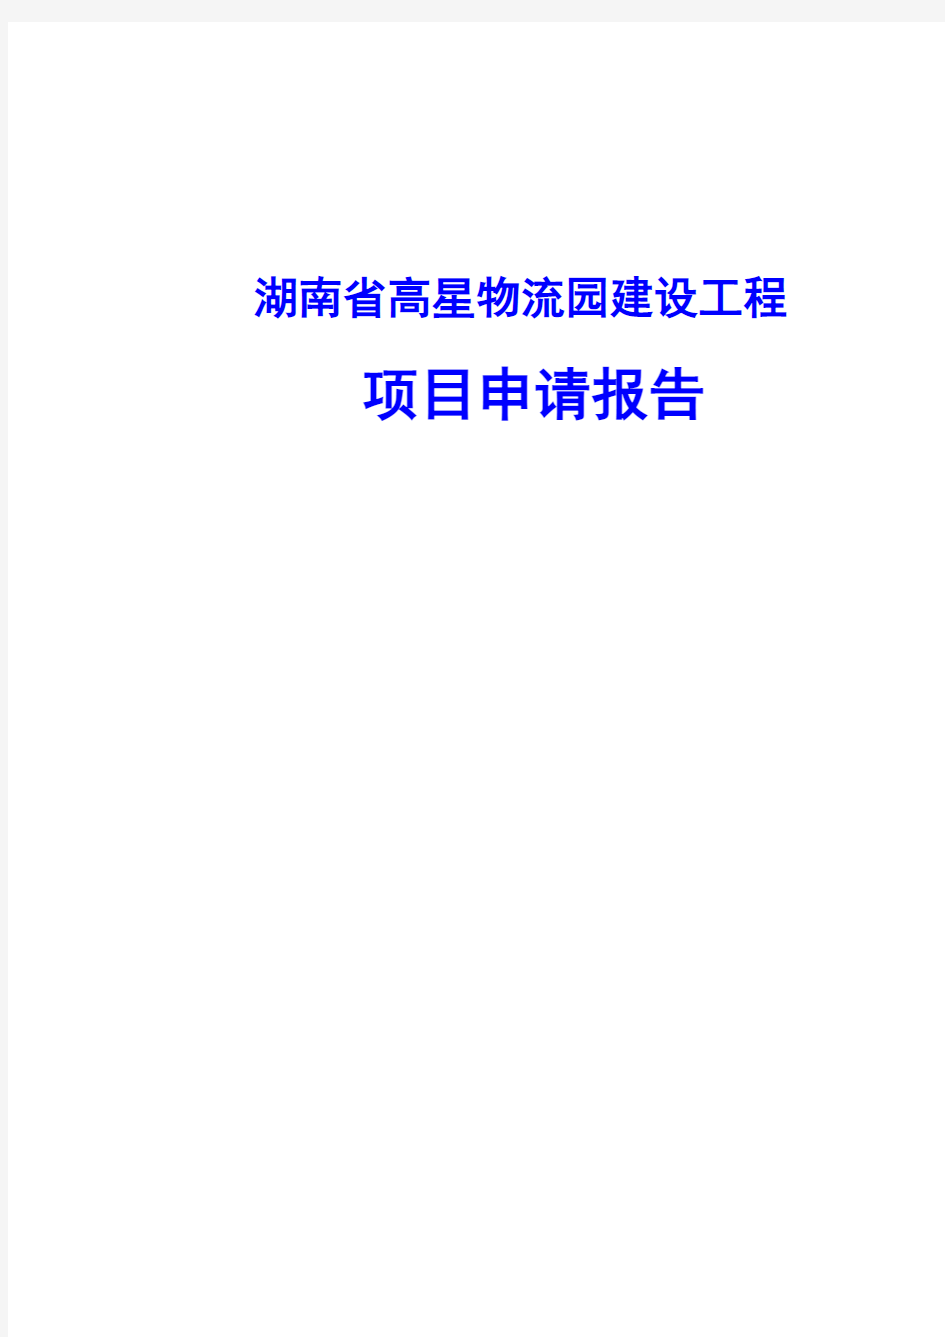 湖南省高星物流园建设工程项目申请报告